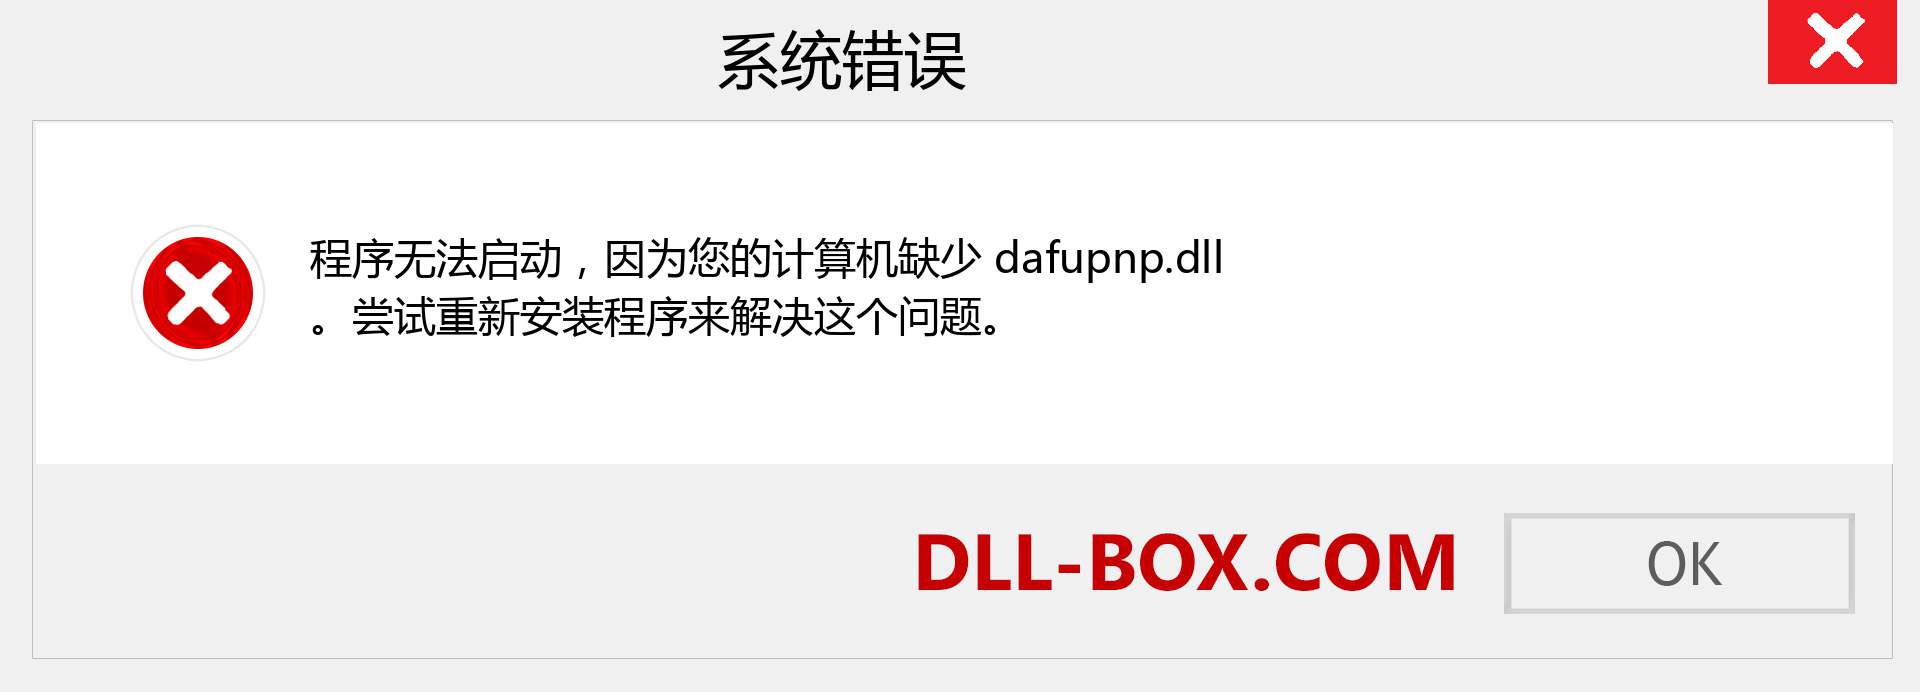 dafupnp.dll 文件丢失？。 适用于 Windows 7、8、10 的下载 - 修复 Windows、照片、图像上的 dafupnp dll 丢失错误